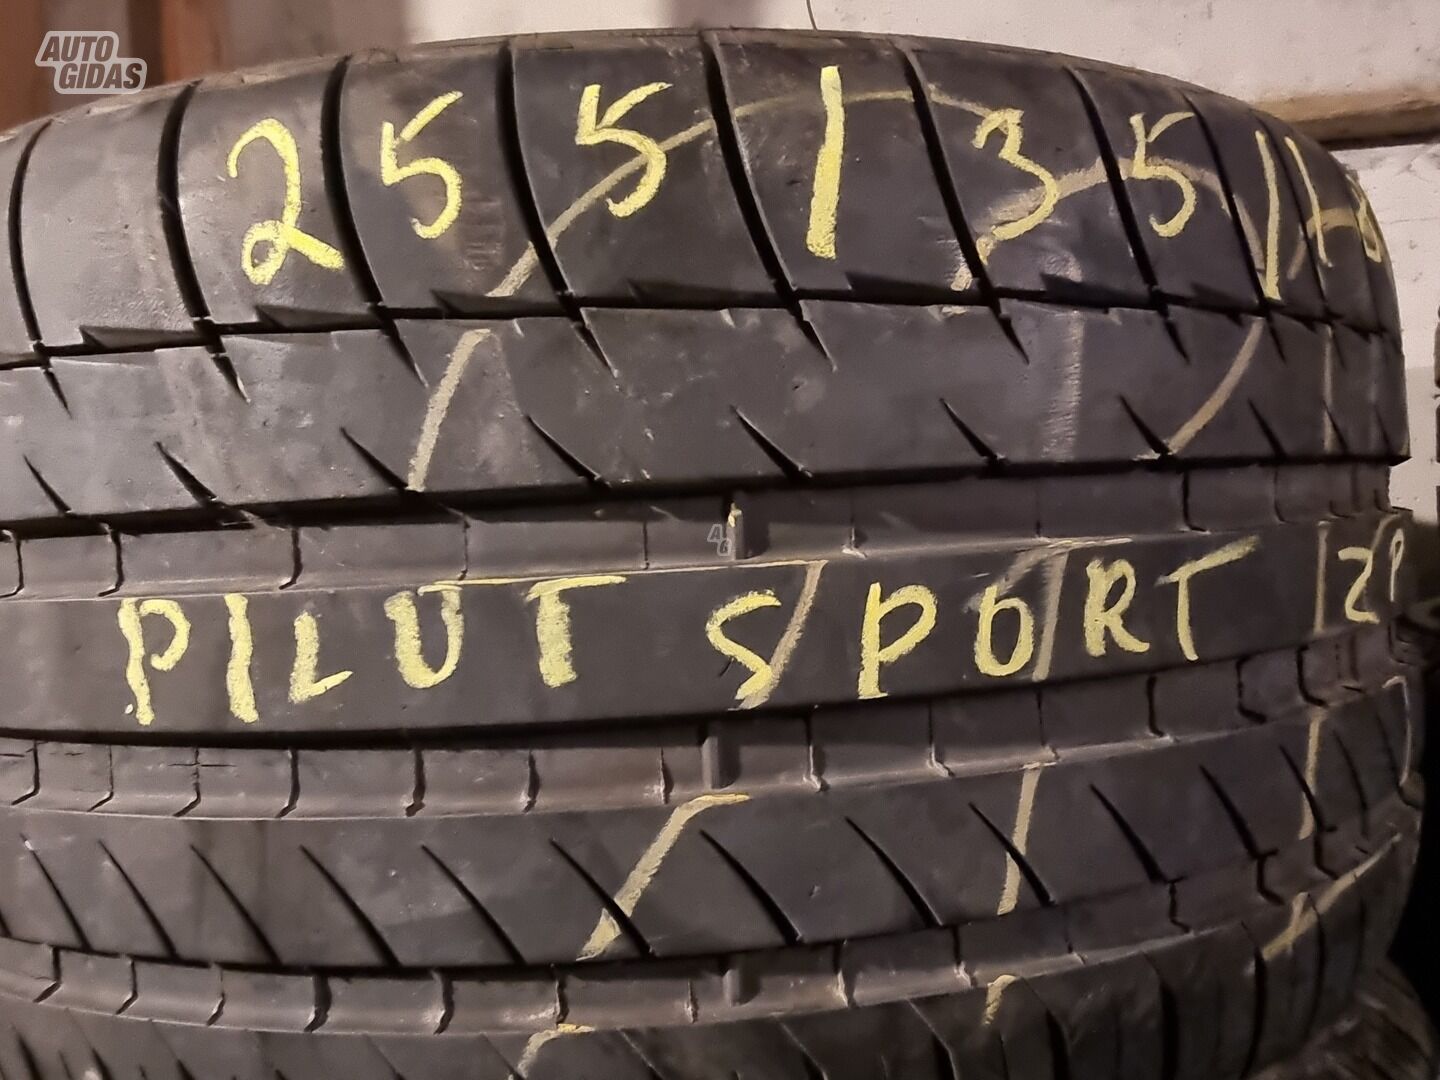 Michelin Pilot sport R18 summer tyres passanger car